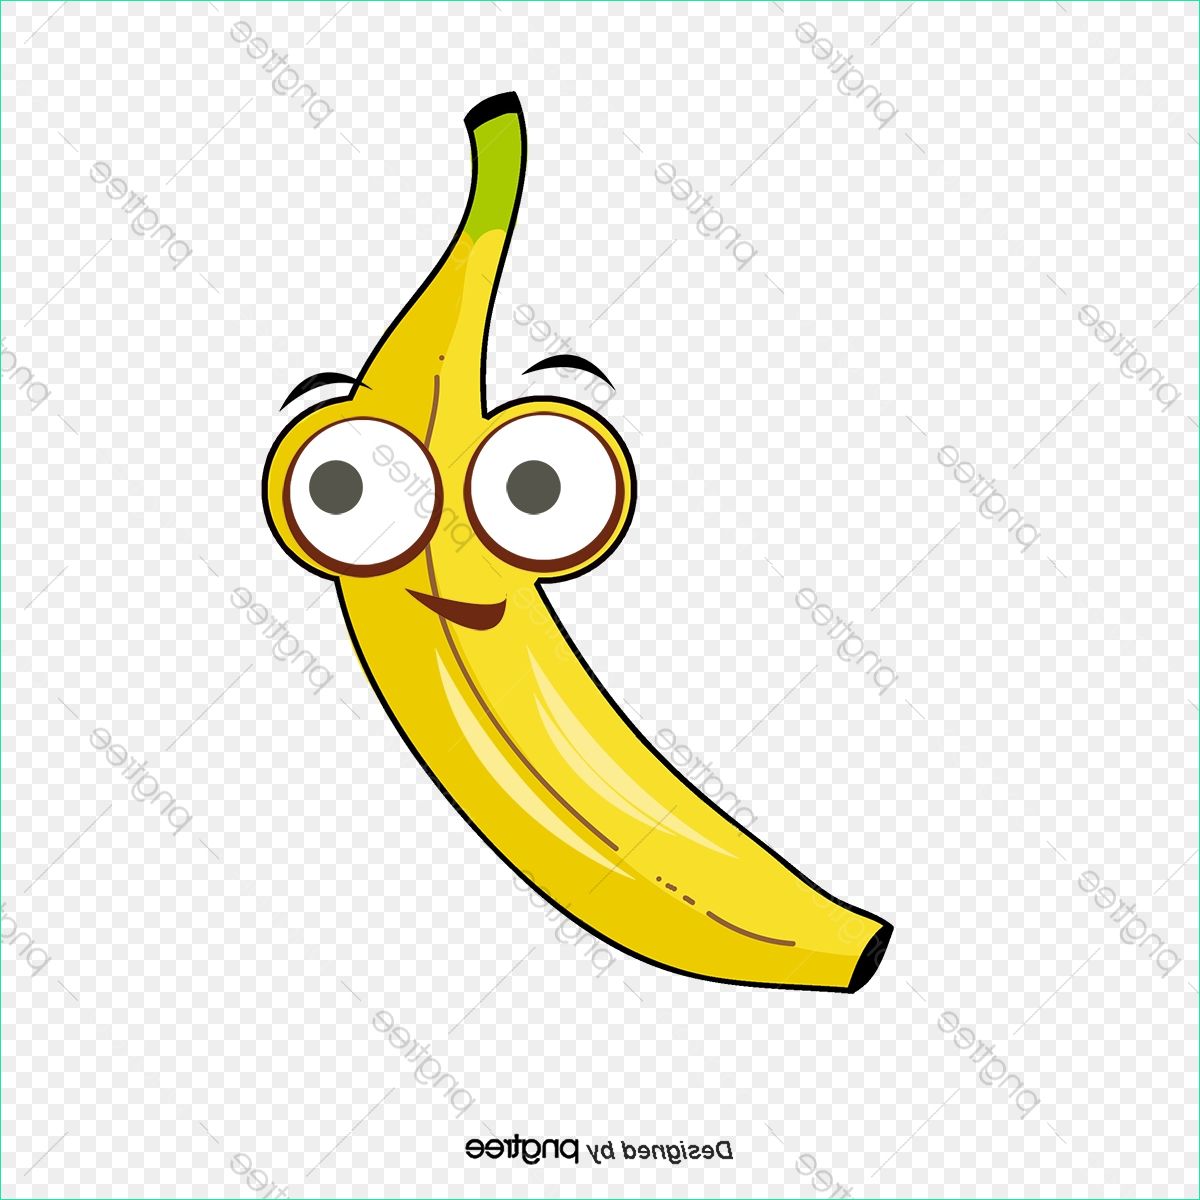 Dessin Banane Élégant Stock Le Dessin De La Banane Dessin Jaune Bananes Et tout